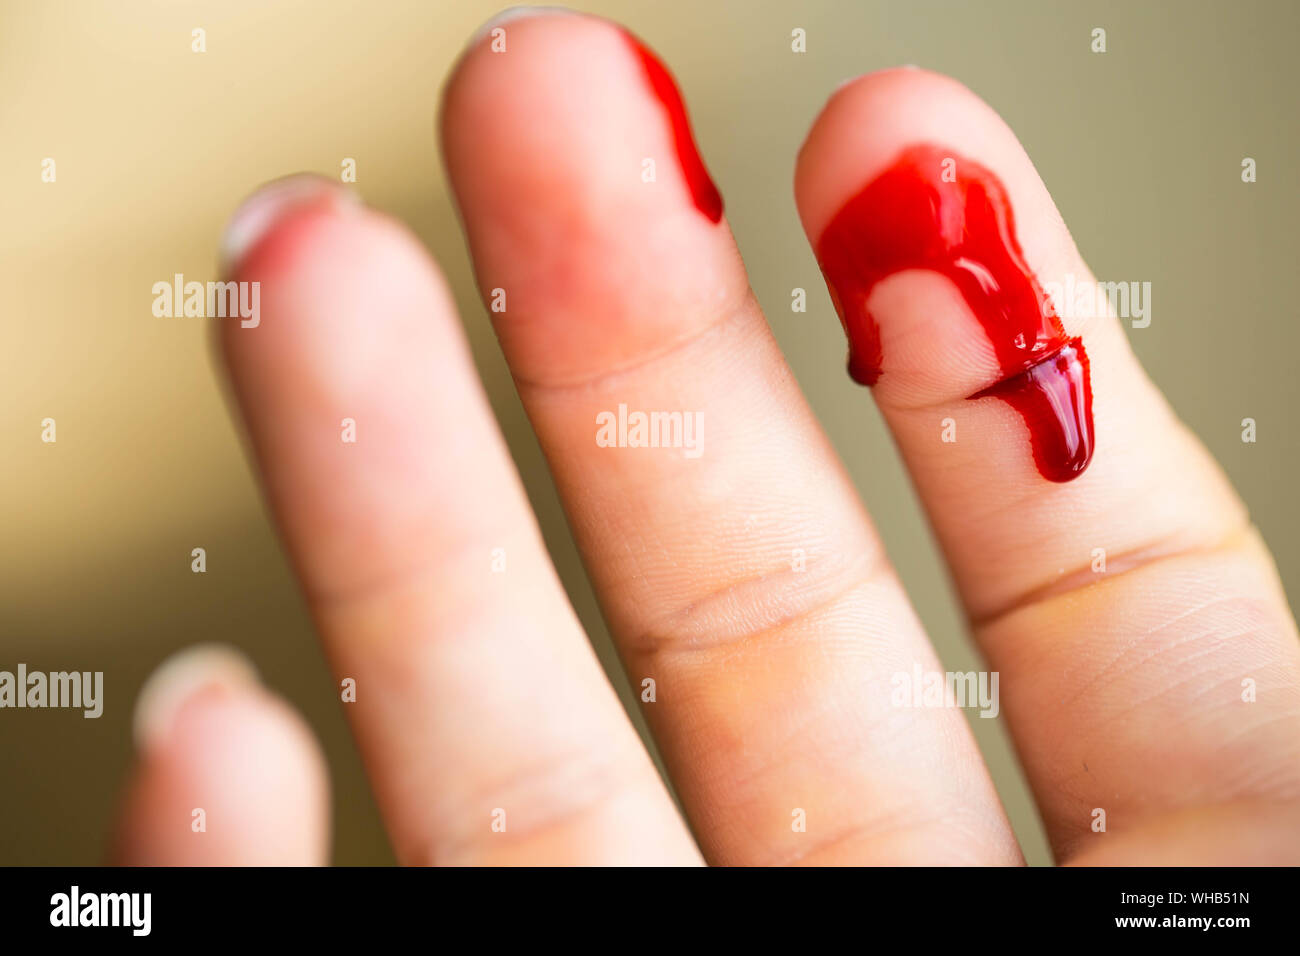 Cut finger bleeding immagini e fotografie stock ad alta risoluzione - Alamy